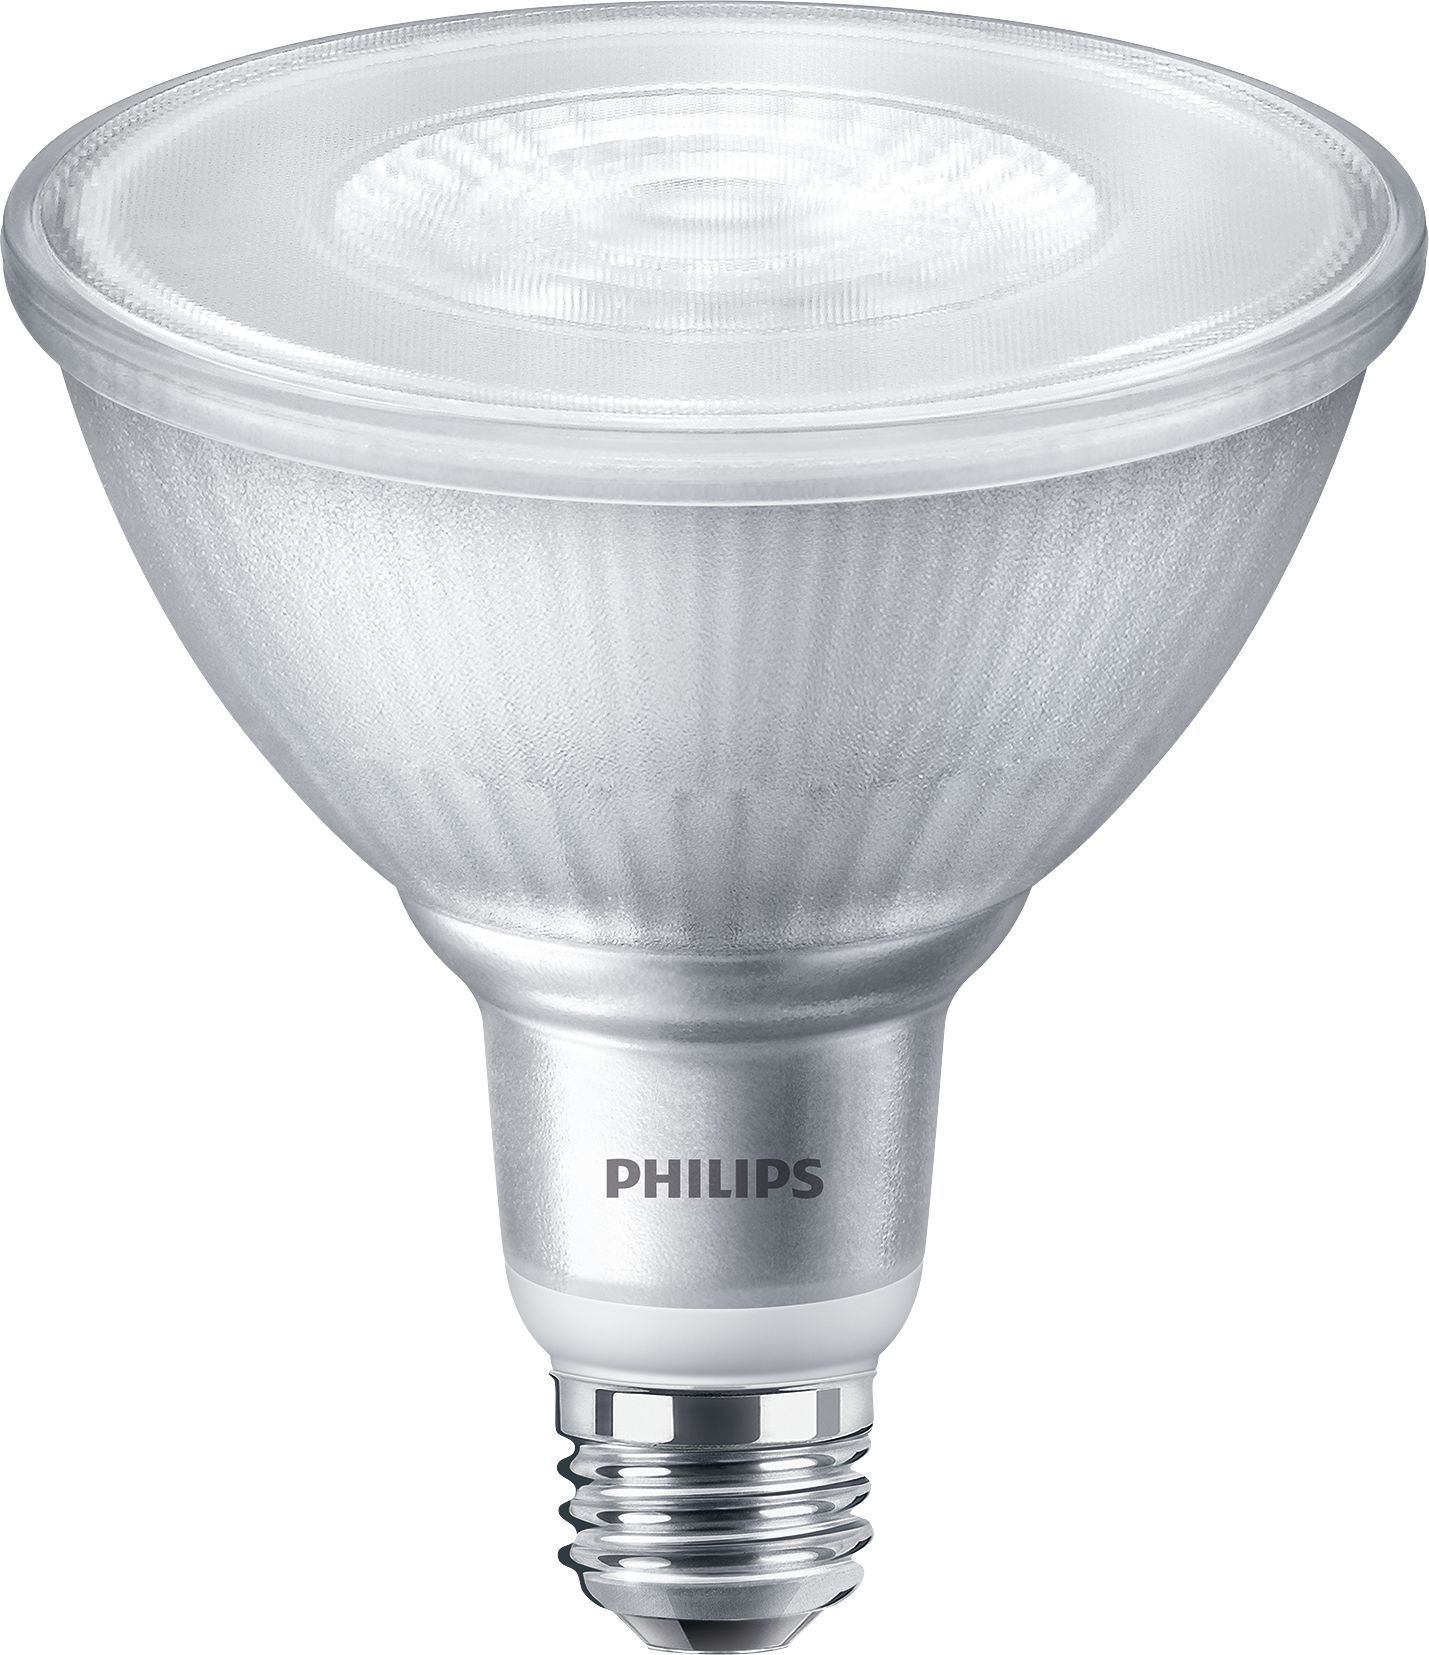 Philips LED 50W GU10 WarmGlow 3Pk